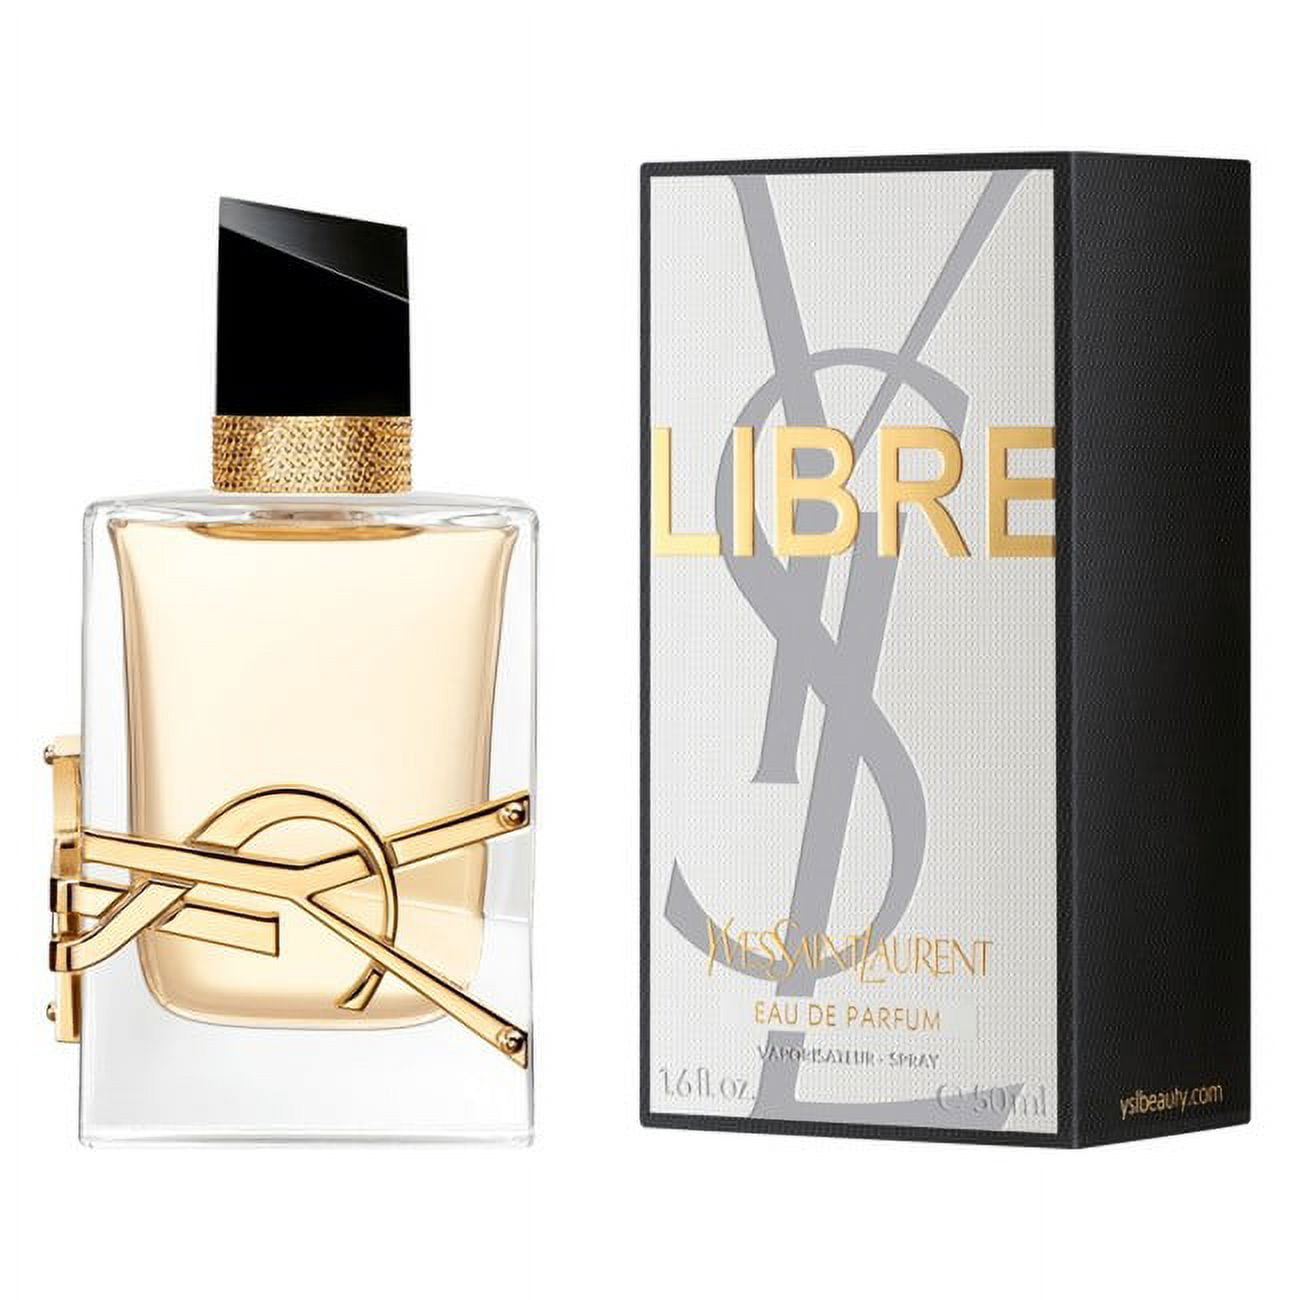 Yves Saint Laurent YSL Perfume Miniatures Travel Set for Women Libre EDT  0.25 Oz + Libre EDP 0.25 Oz + Libre EDP 0.25 Oz + Libre Eau De Parfum  Intense